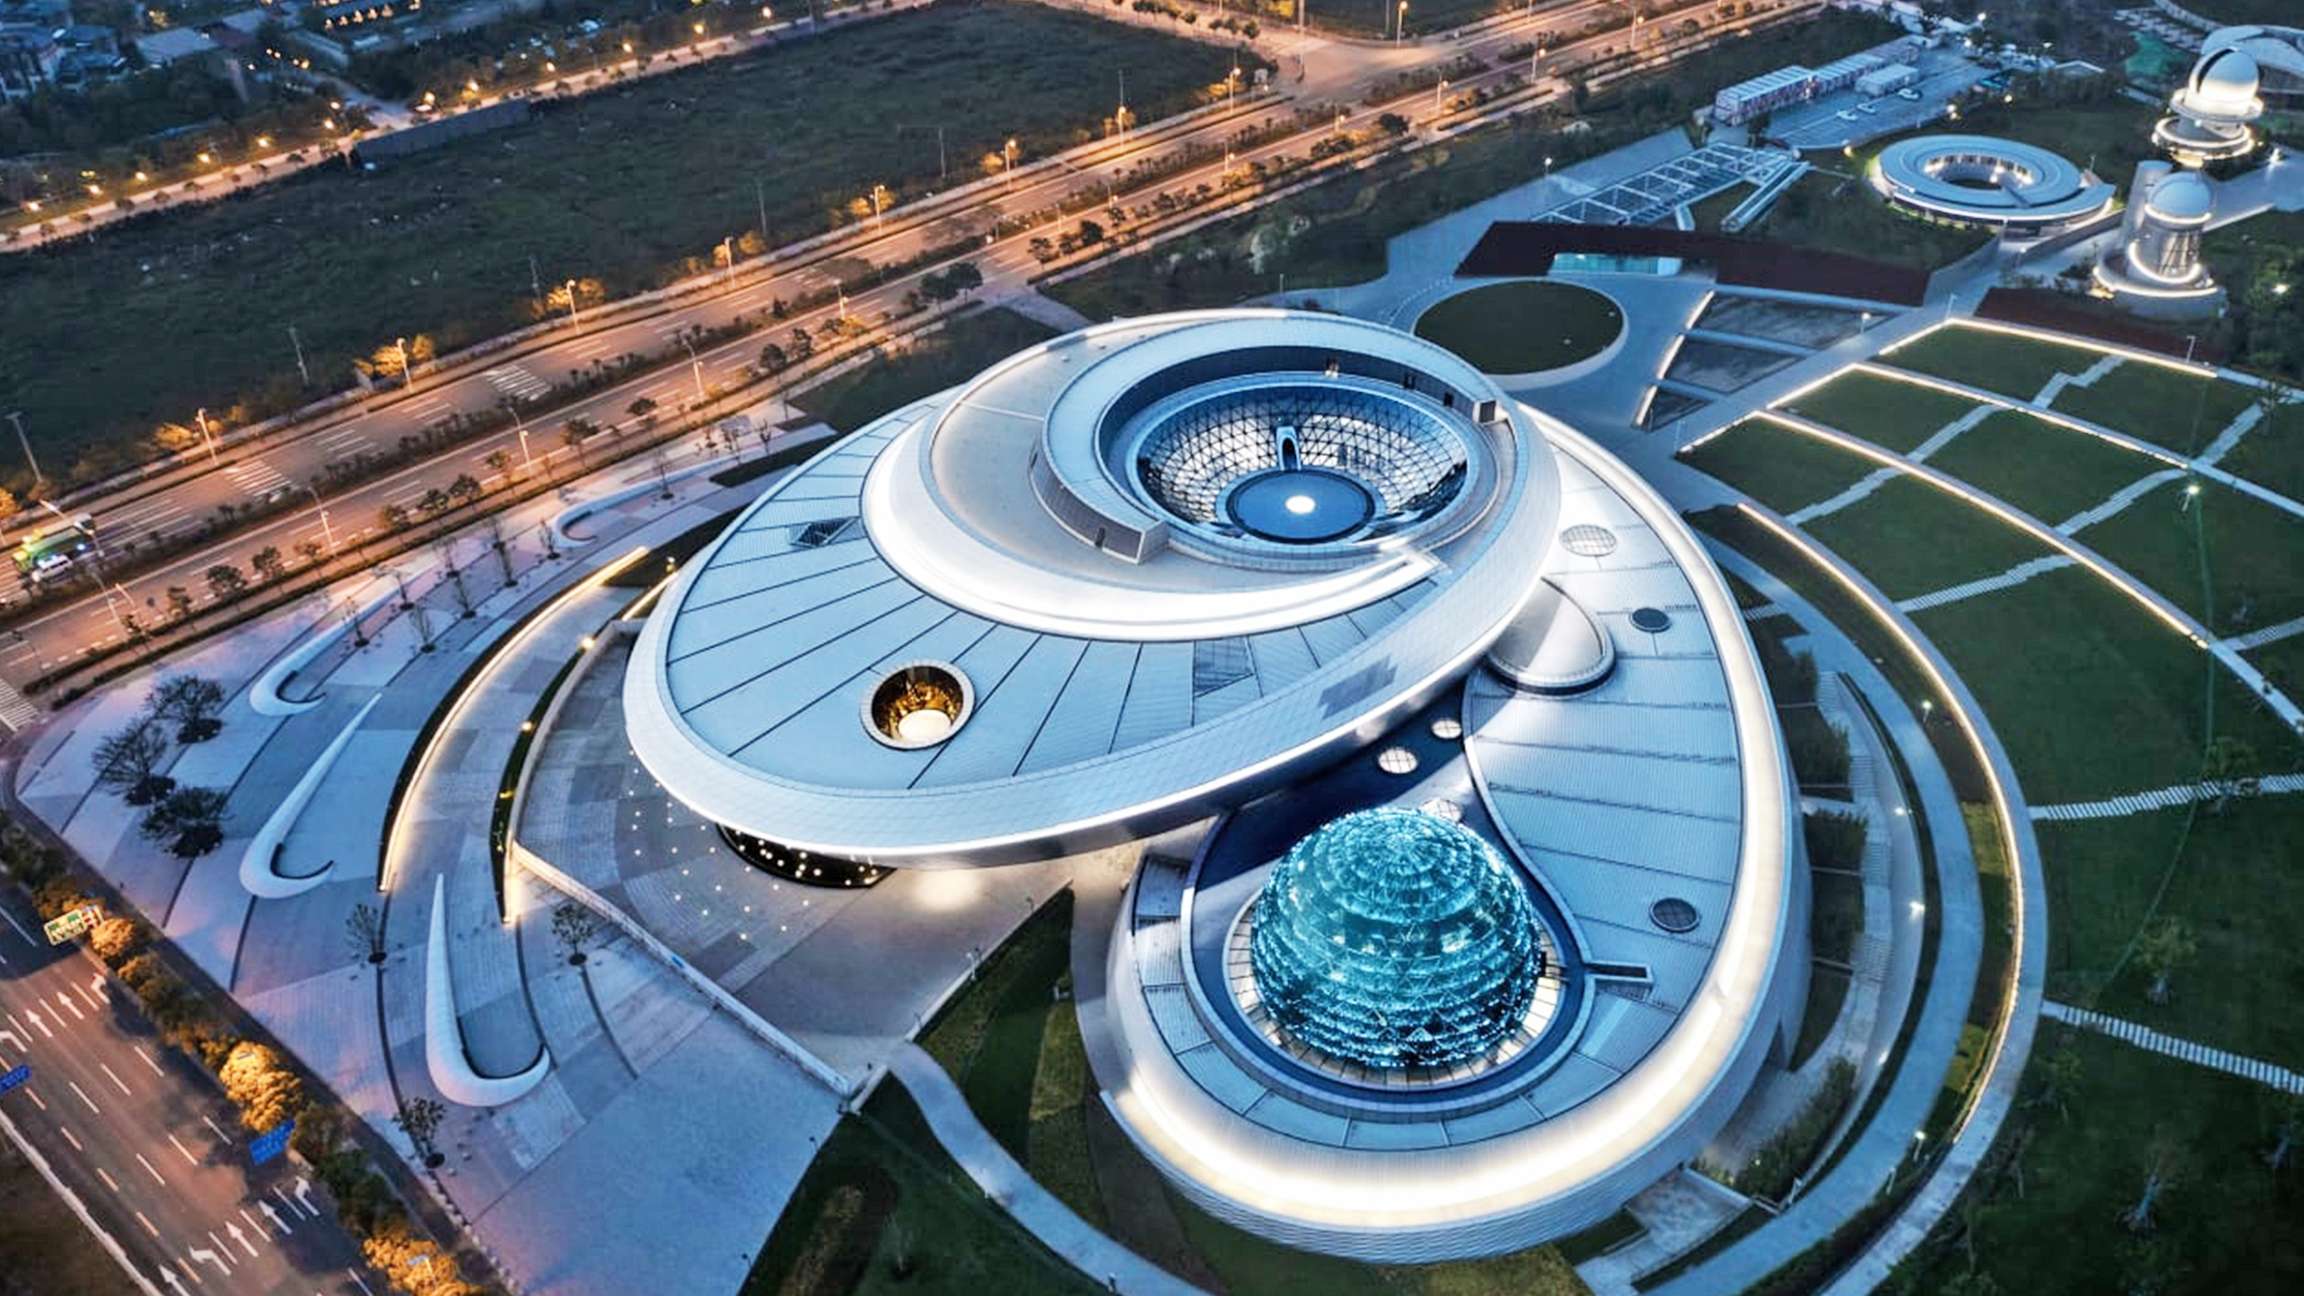 Σαγκάη το μεγαλύτερο μουσείο αστρονομίας στον κόσμο